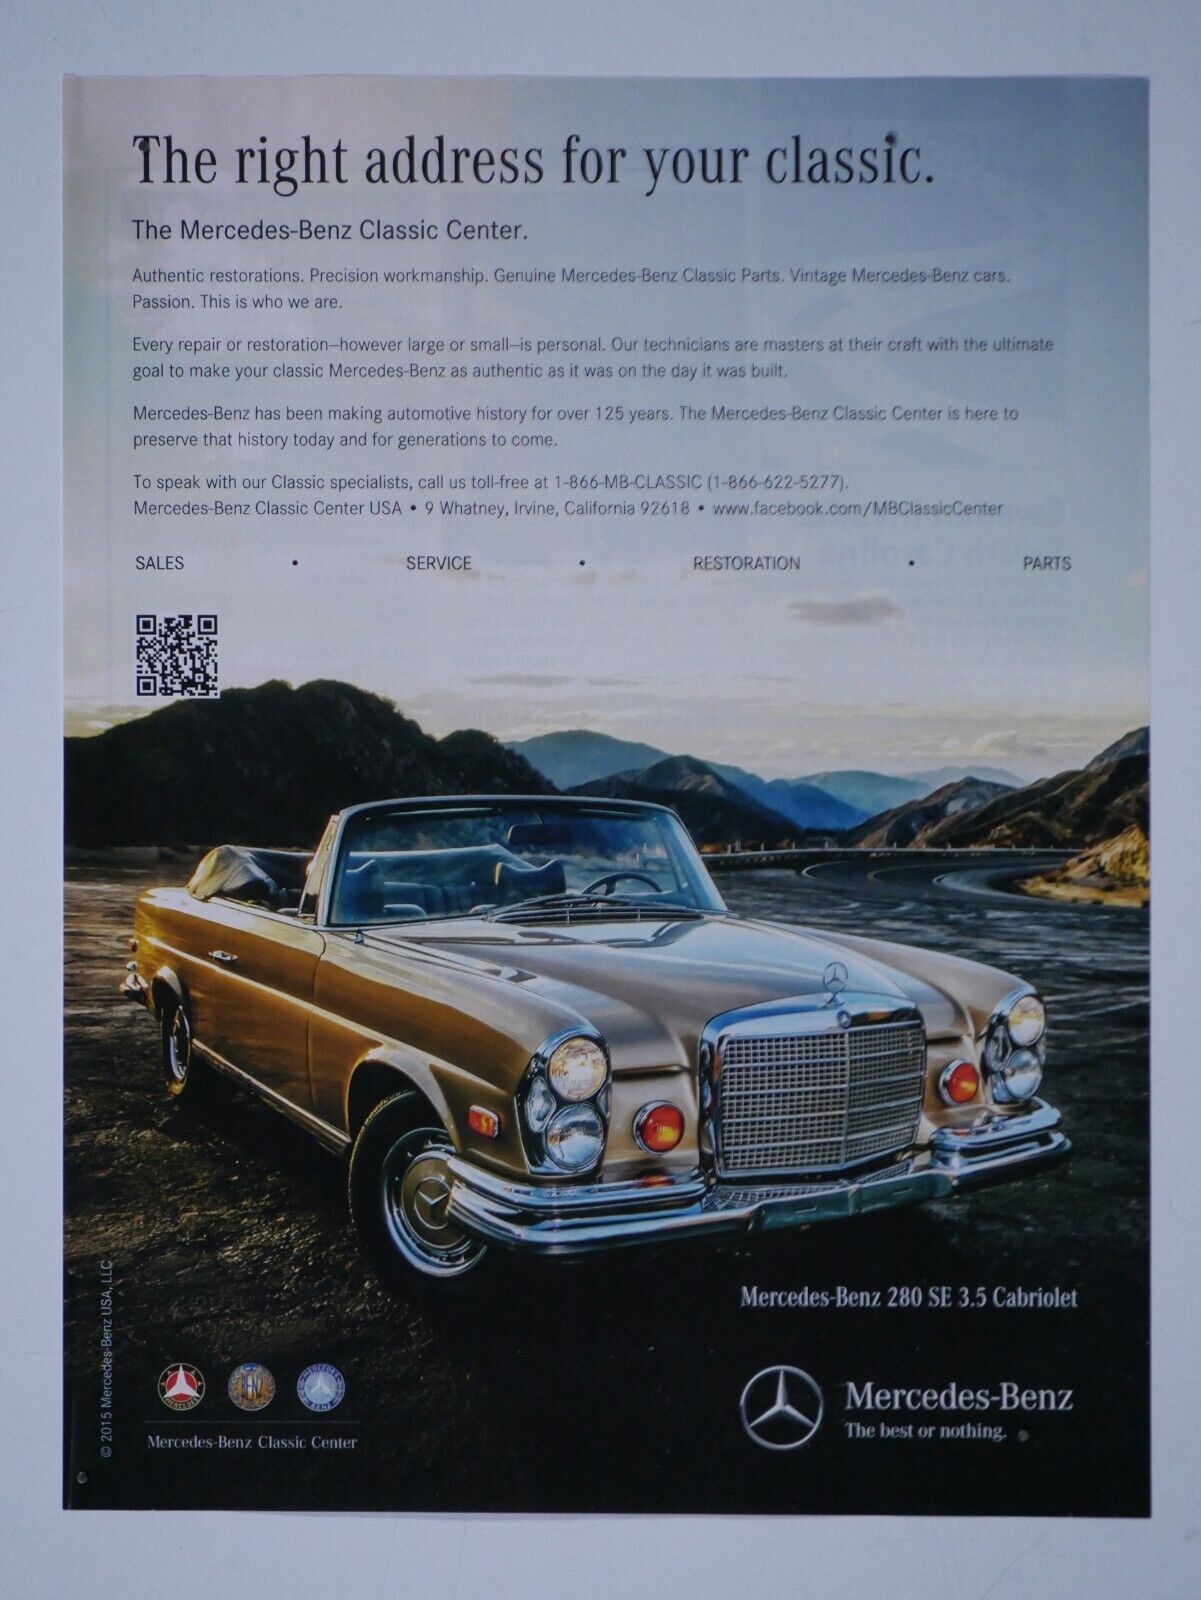 1971 Mercedes Benz 280 SE 3.5 Cabriolet 2016 MB Classic Original Print Ad